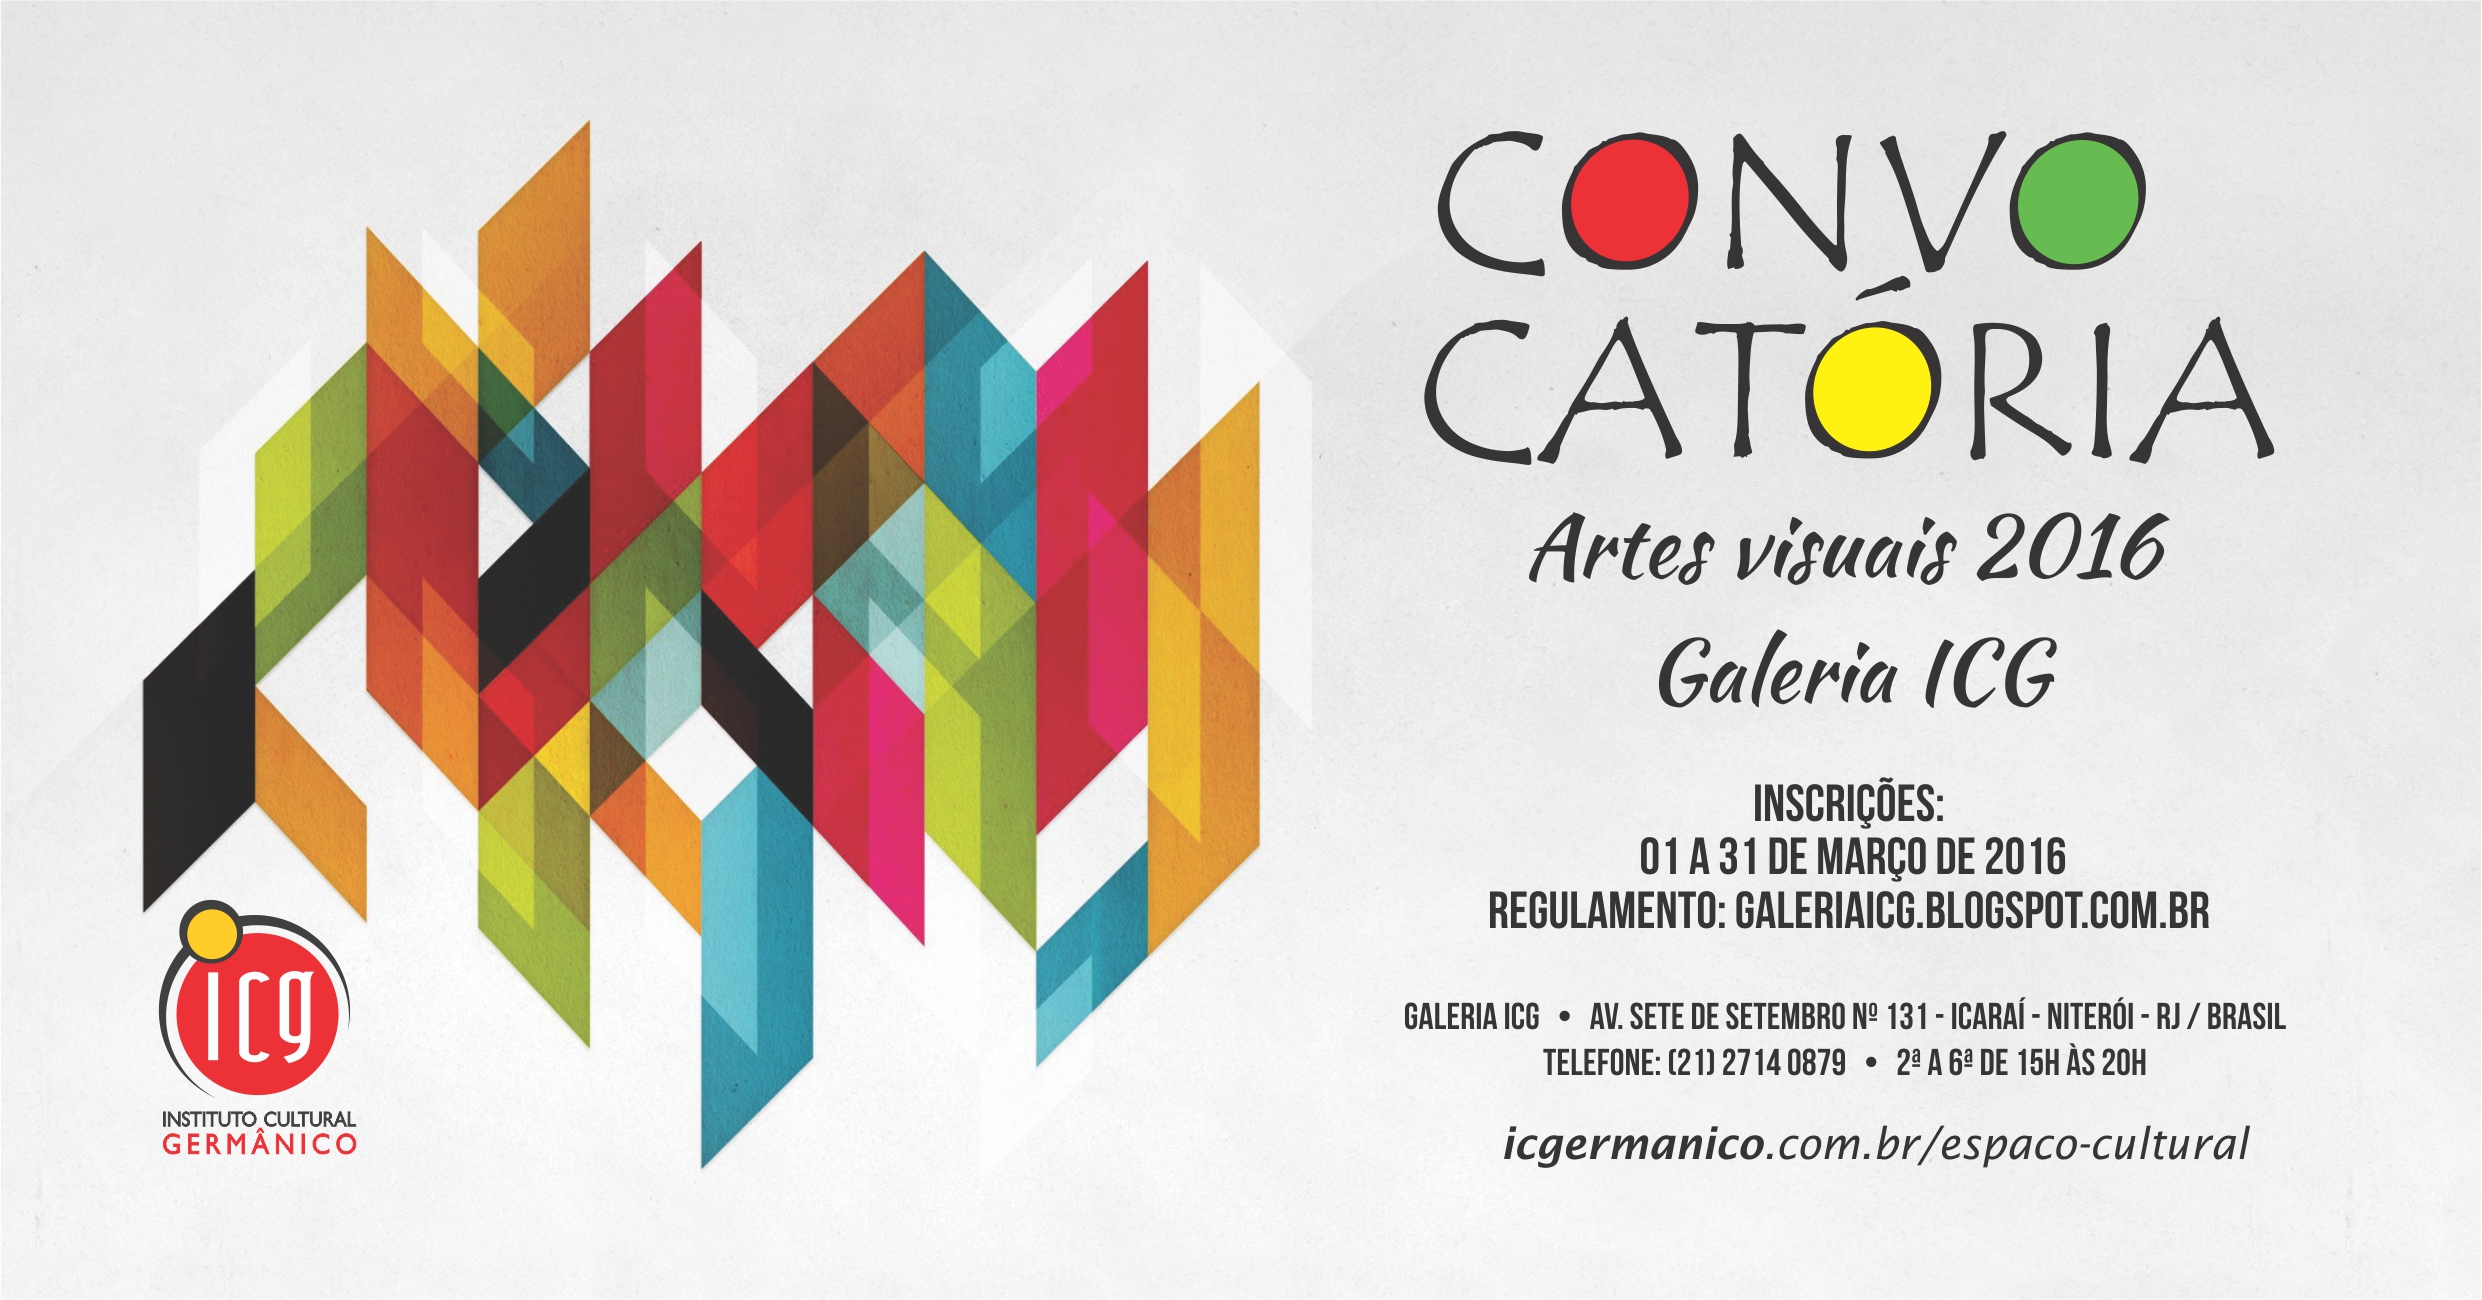 Galeria ICG - Convocatória 2016